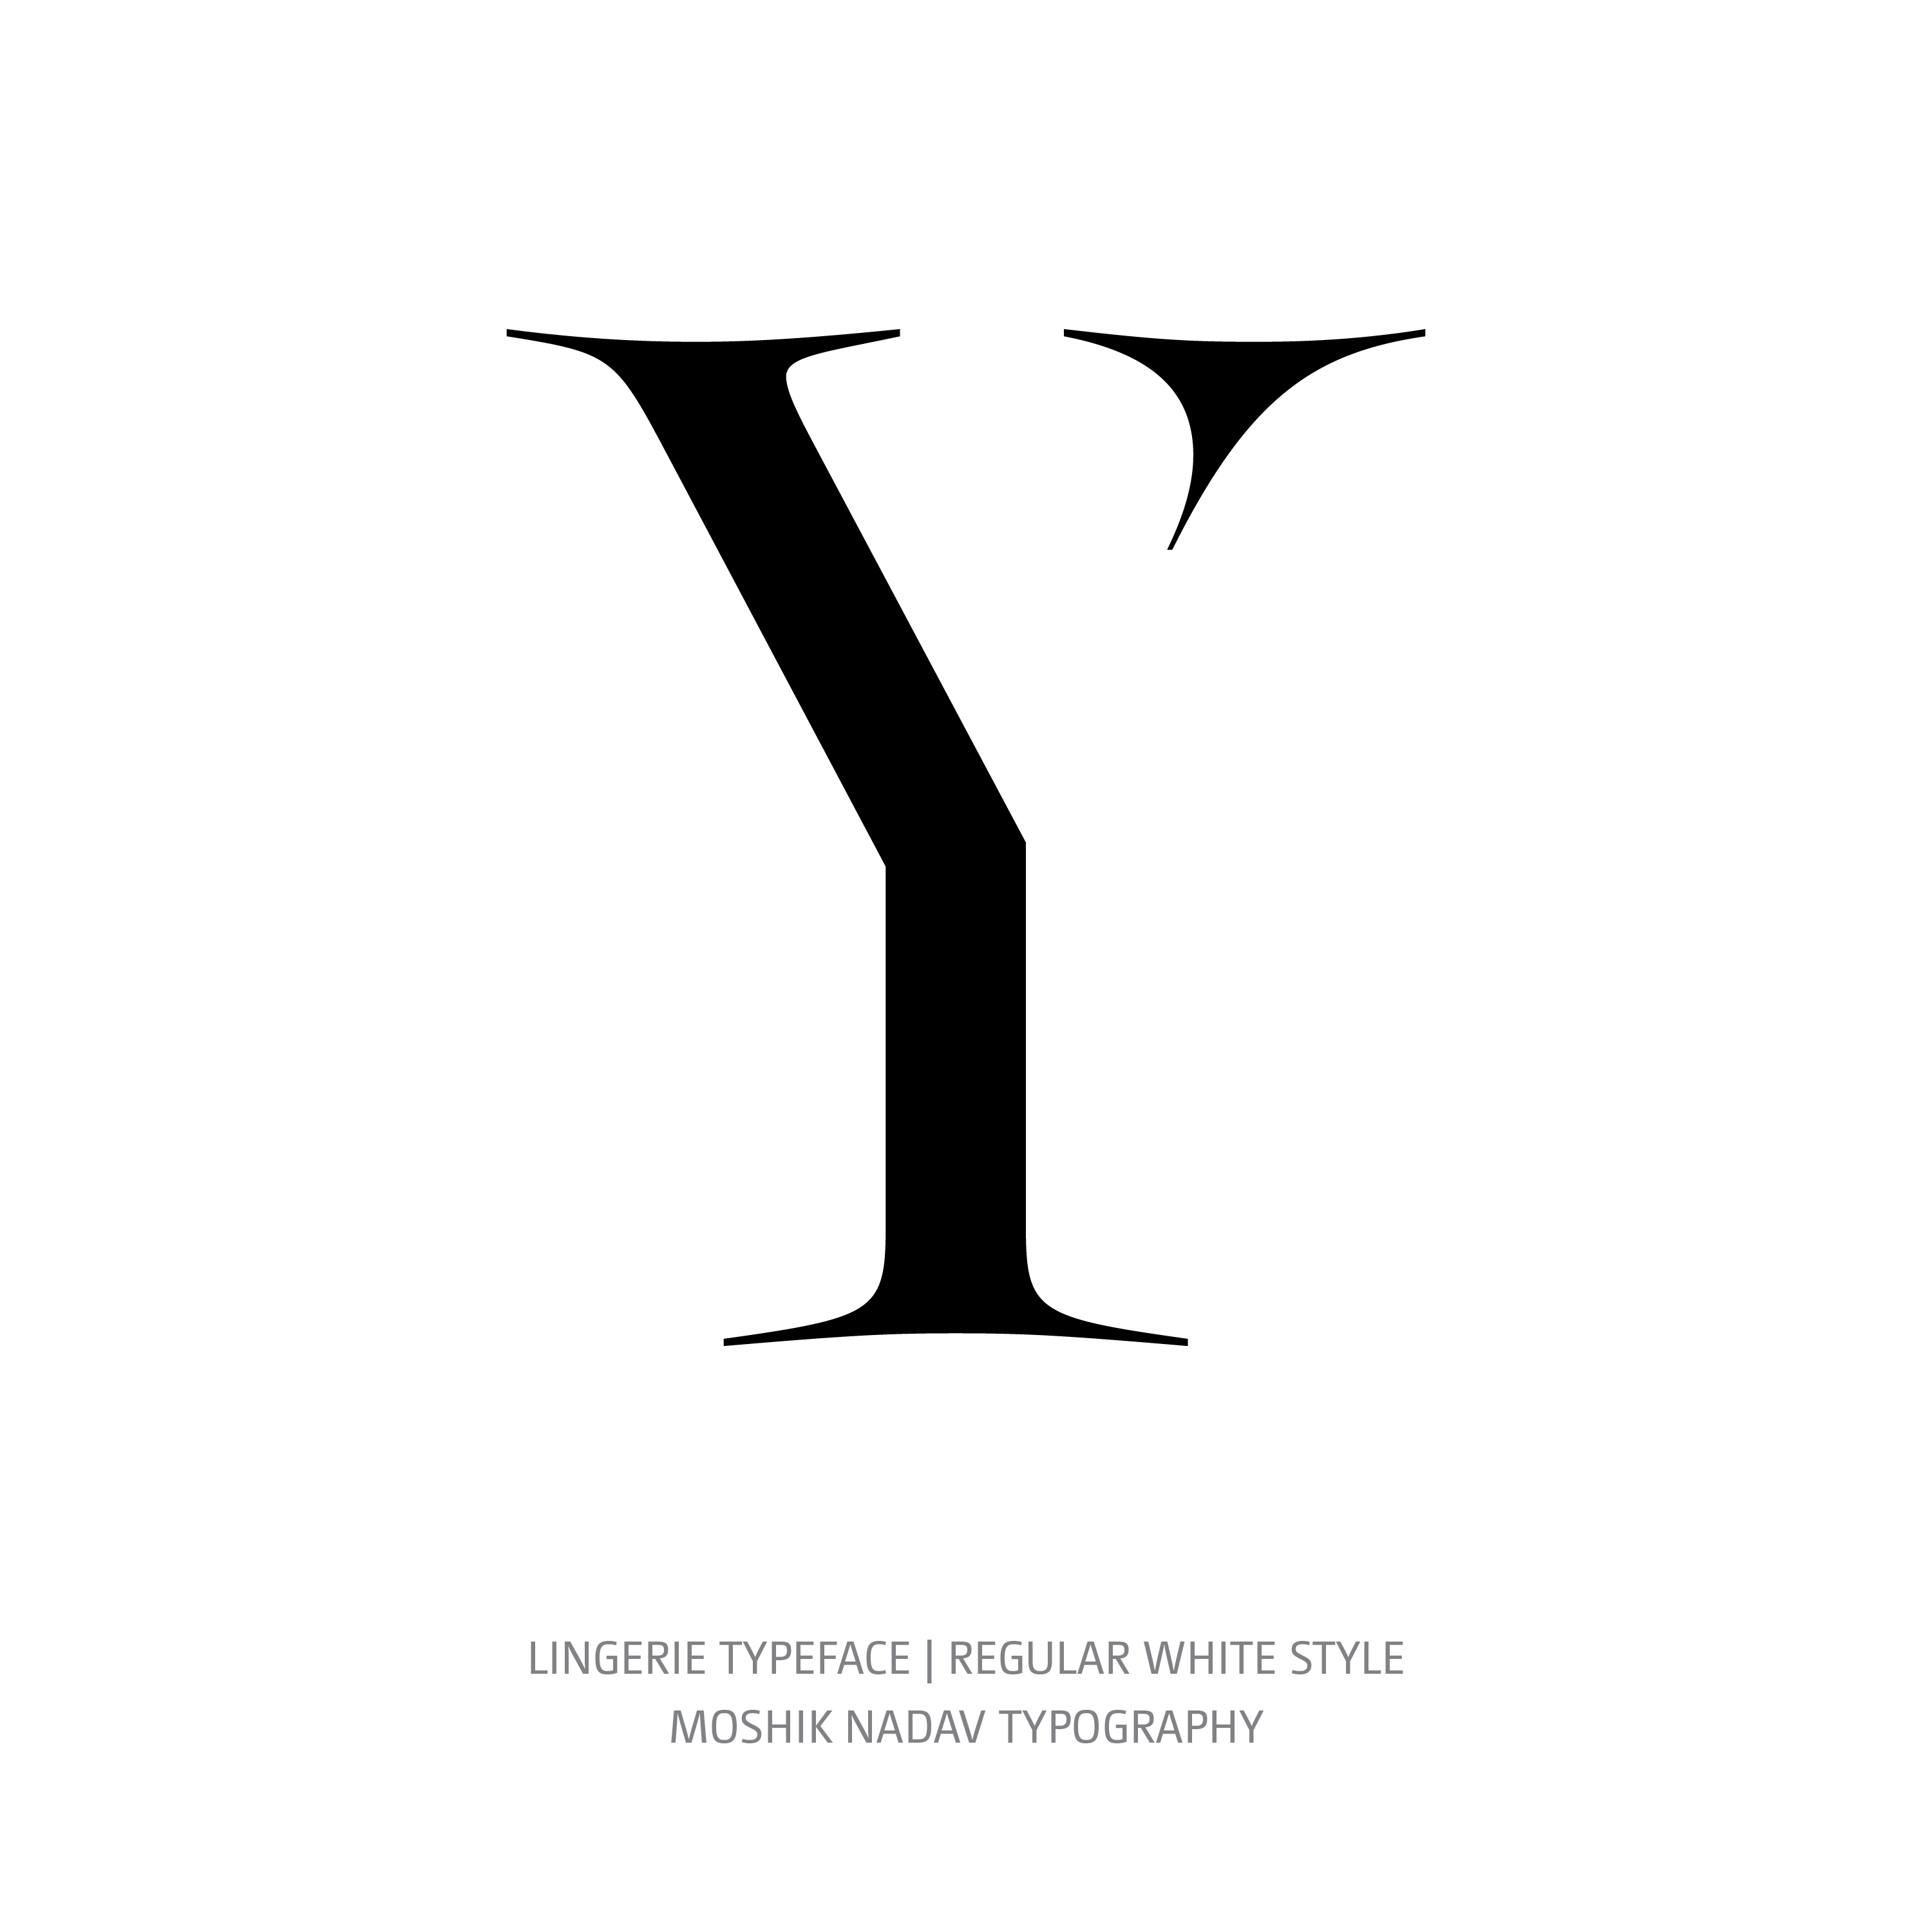 Lingerie Typeface Regular White Y